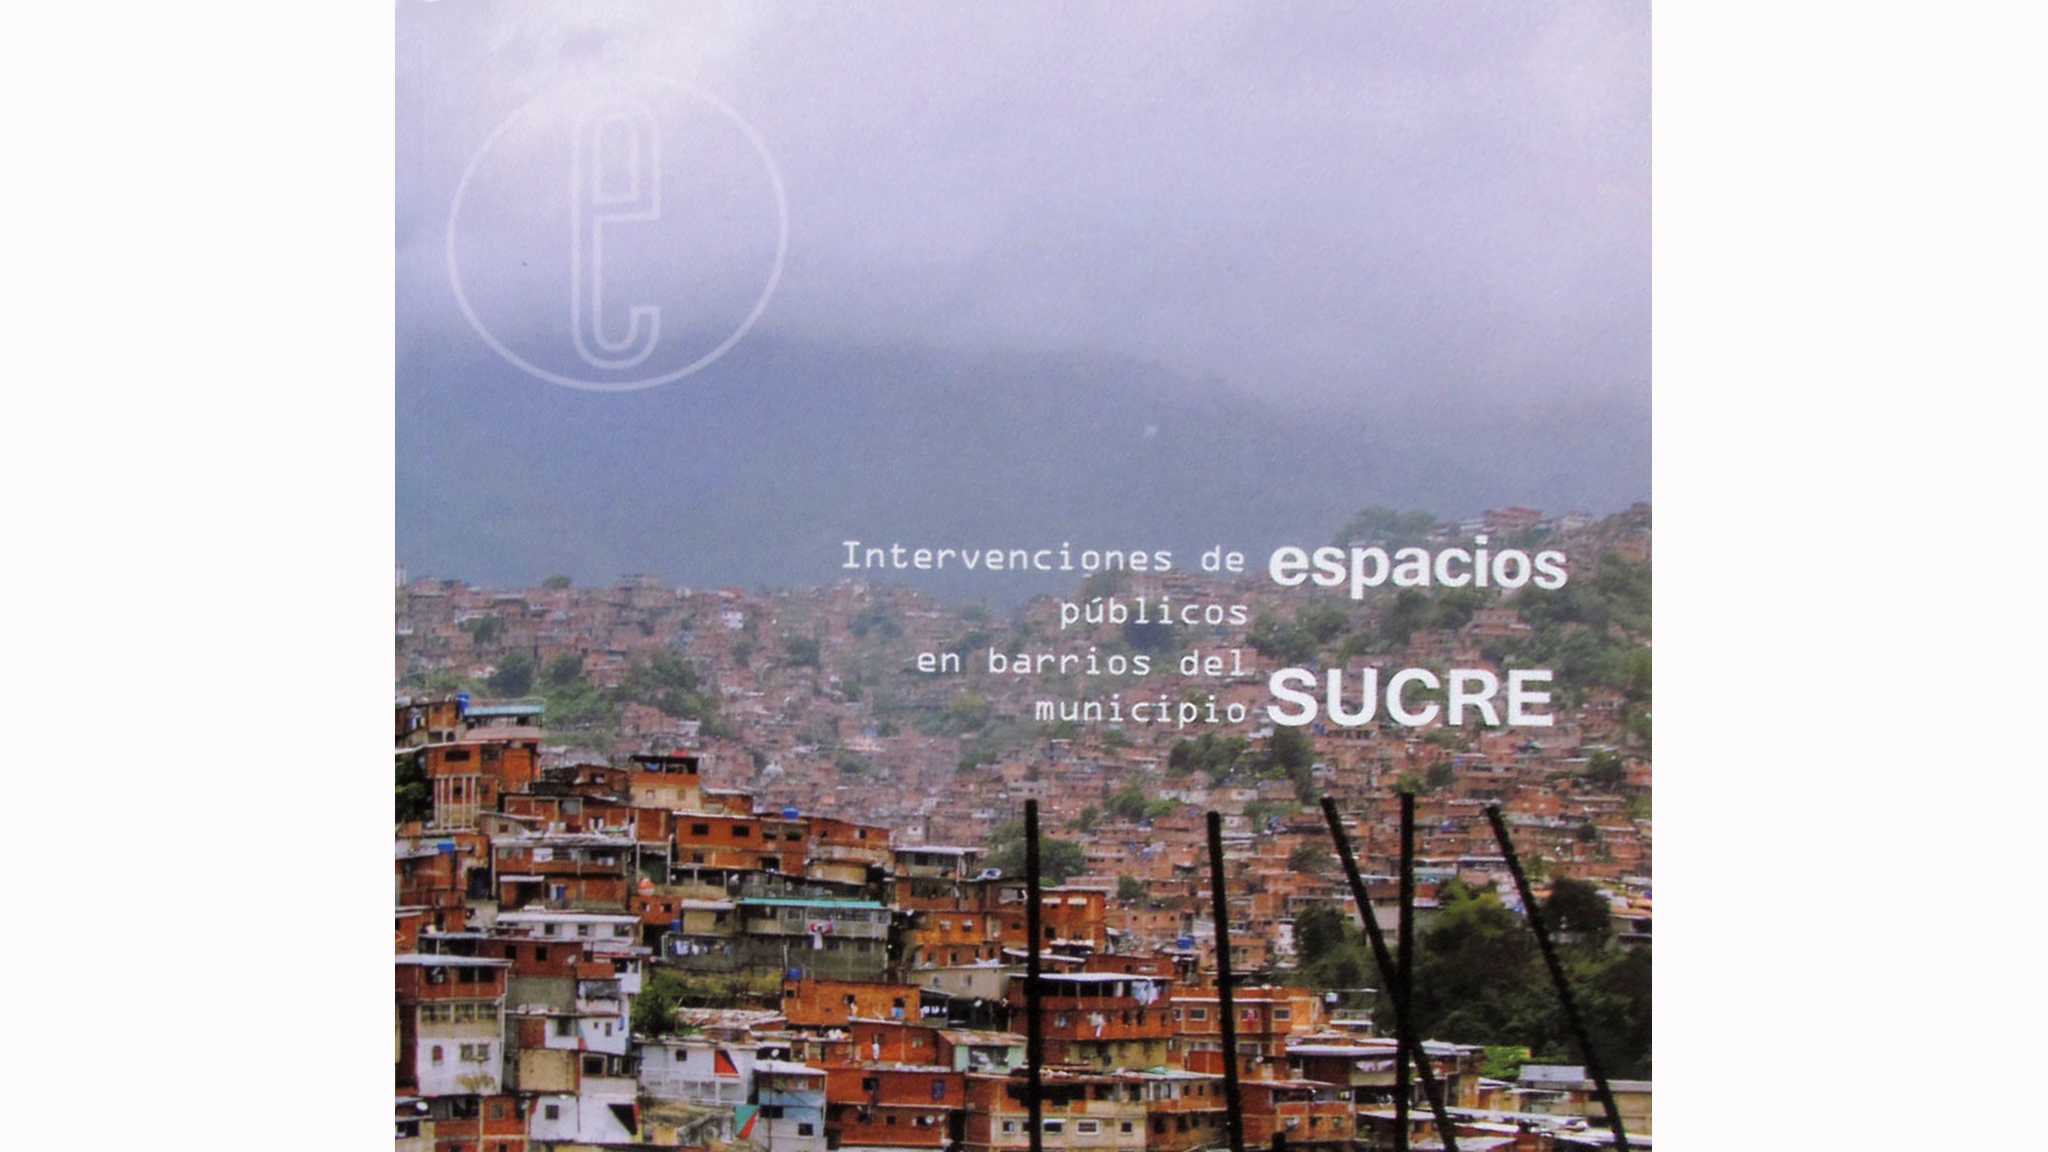 Intervenciones de espacios públicos en barrios del municipio Sucre